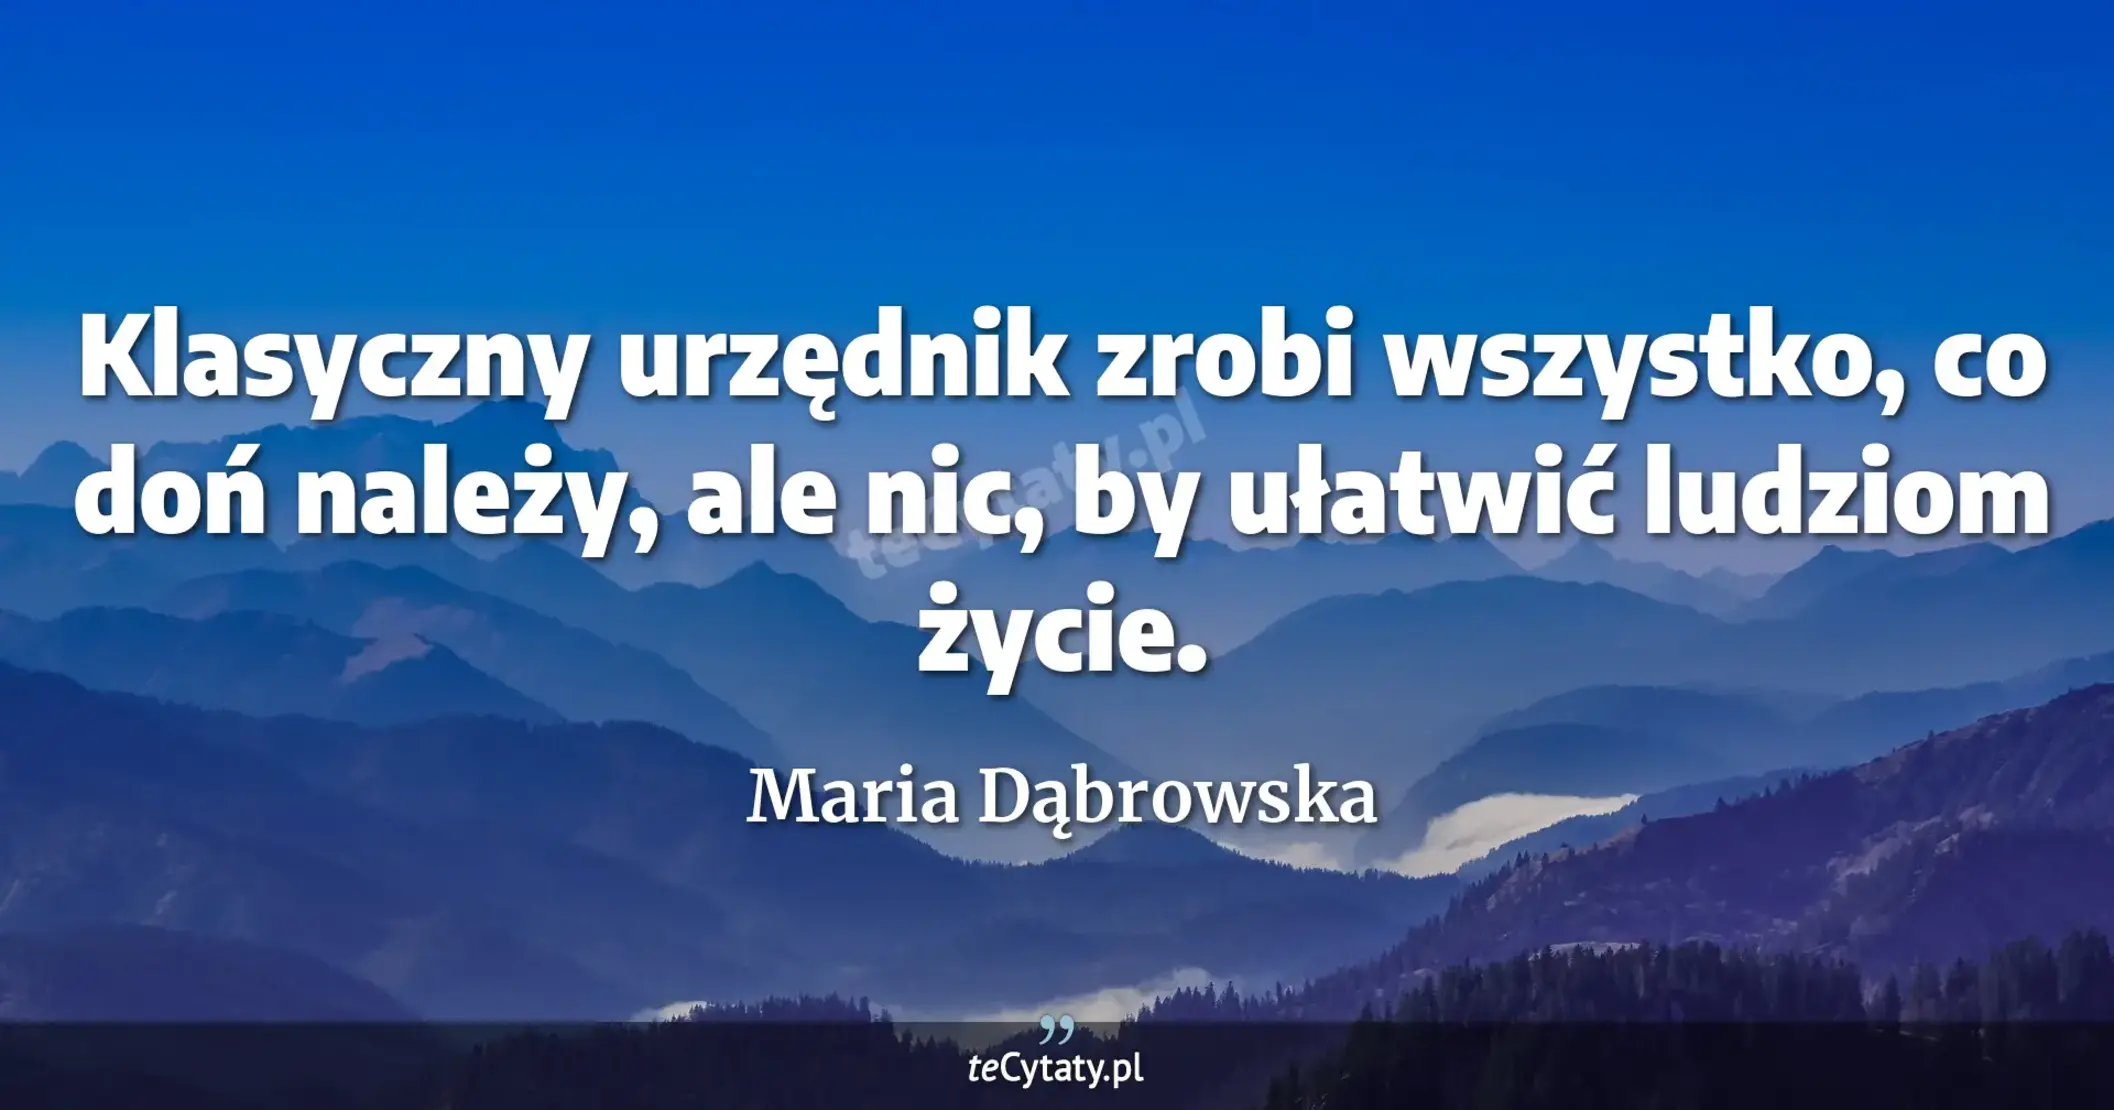 Klasyczny urzędnik zrobi wszystko, co doń należy, ale nic, by ułatwić ludziom życie. - Maria Dąbrowska